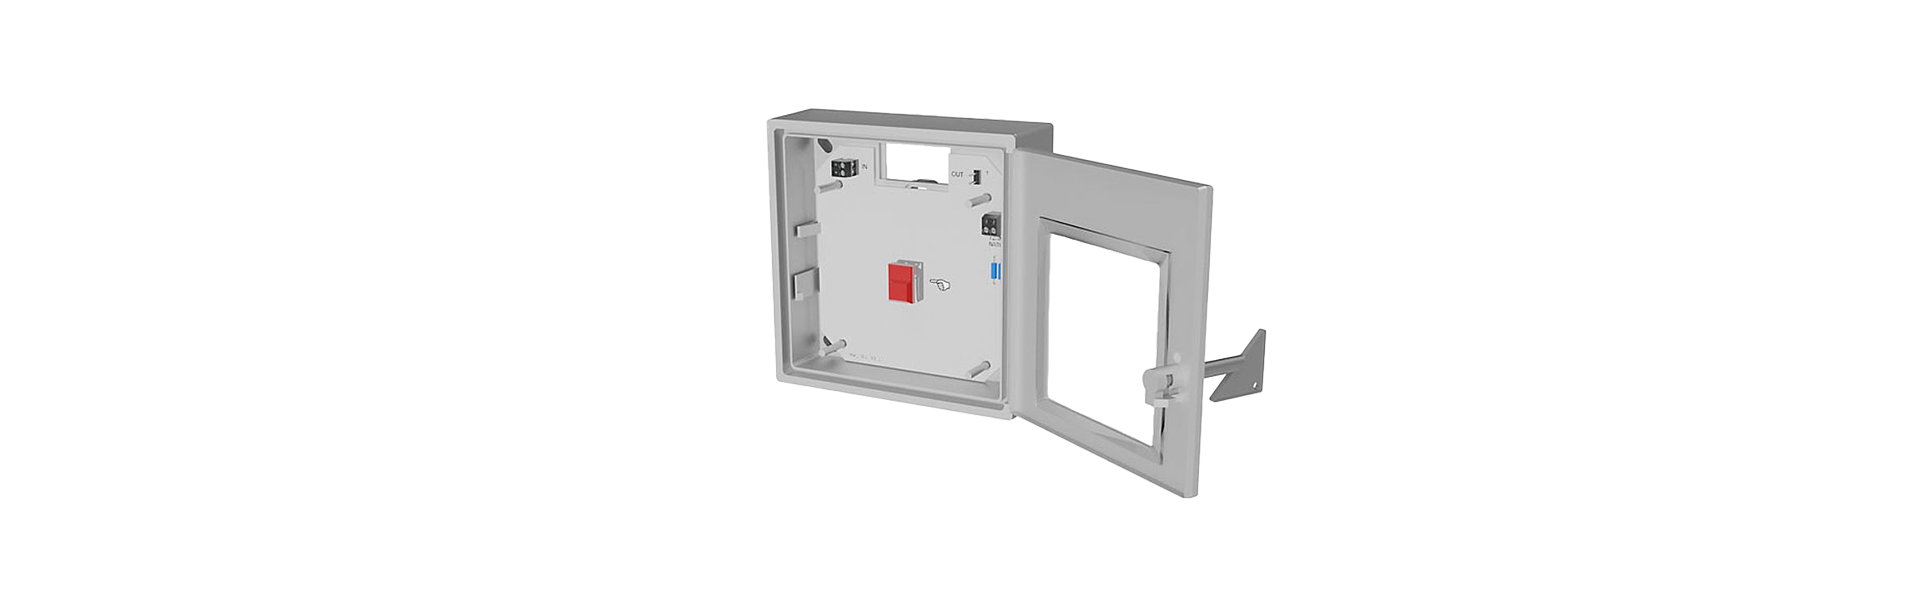 Handauslösung HM-02 für FK90 Brandschutzklappe für gewerbliche Küchen